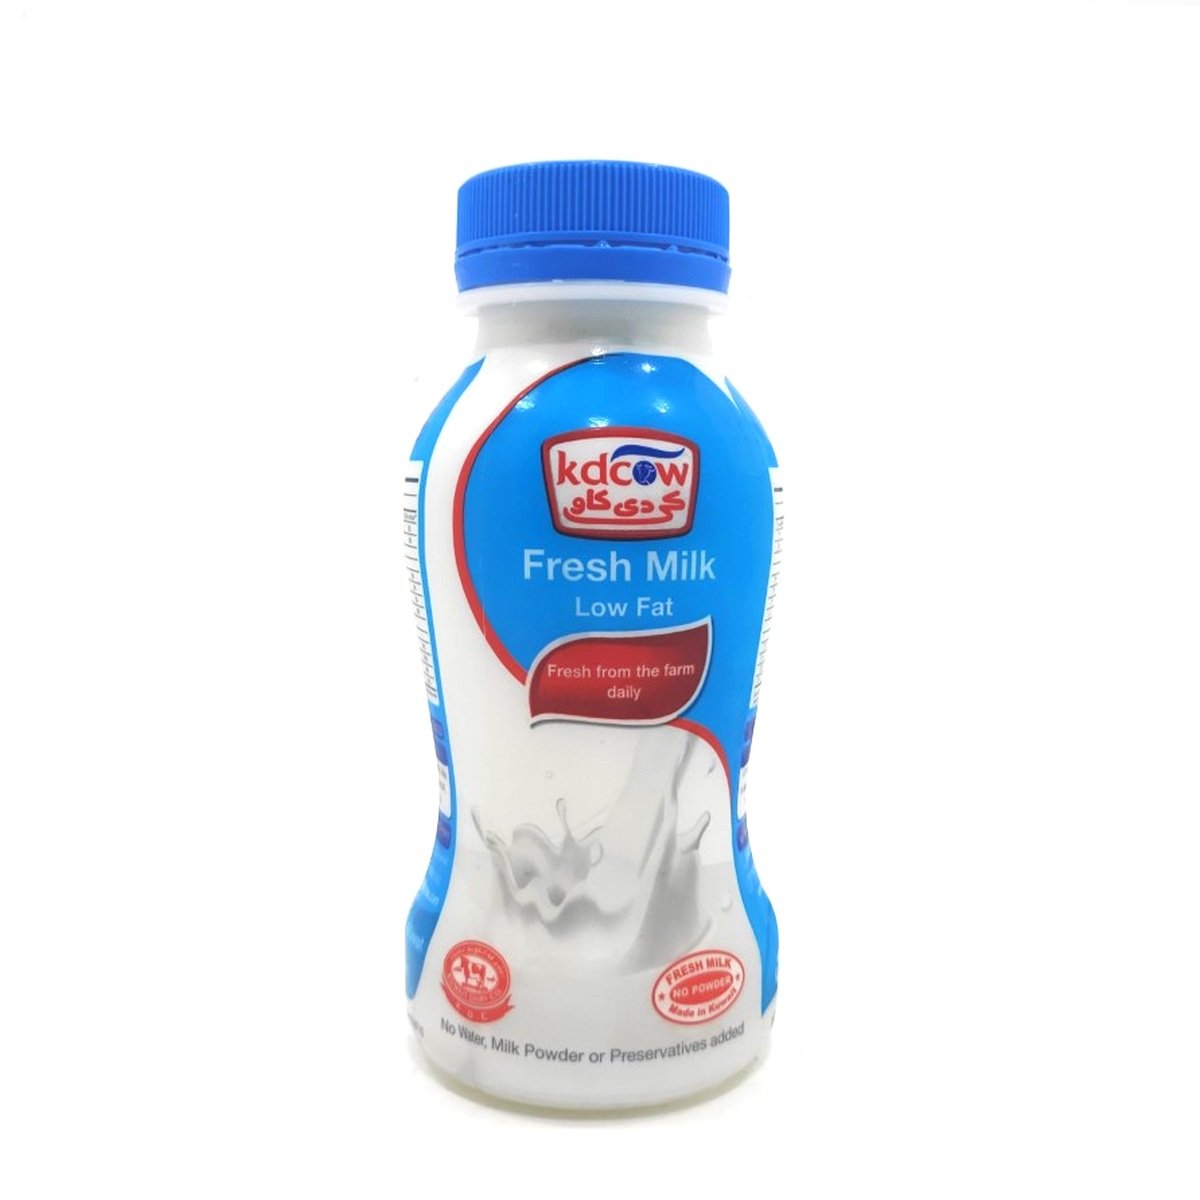 Kdcow Fresh Milk Low Fat 200ml